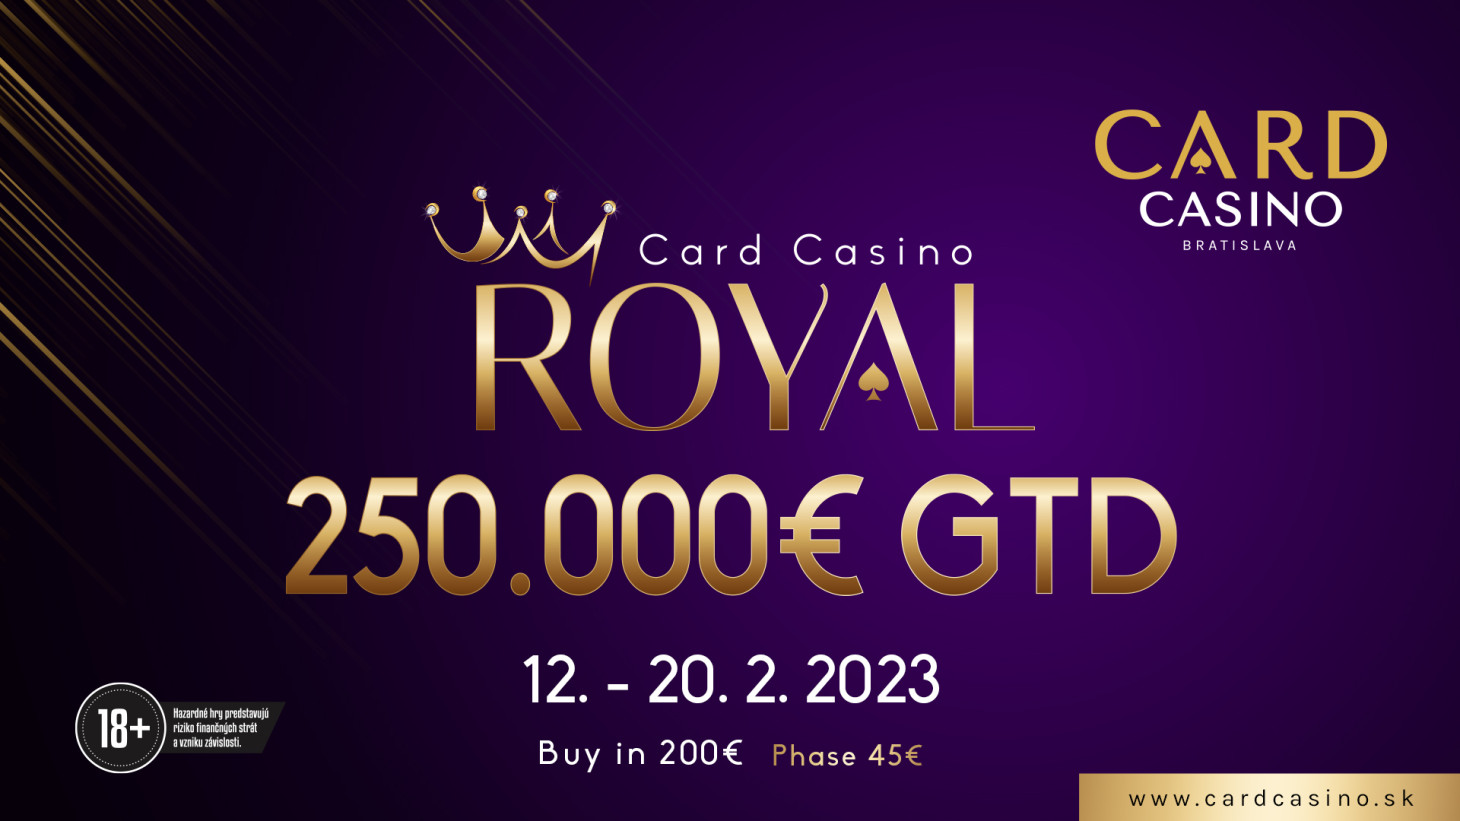 Royal opäť zaplní pokrové stoly. Vo februári sa bude hrať o 250.000€ GTD!